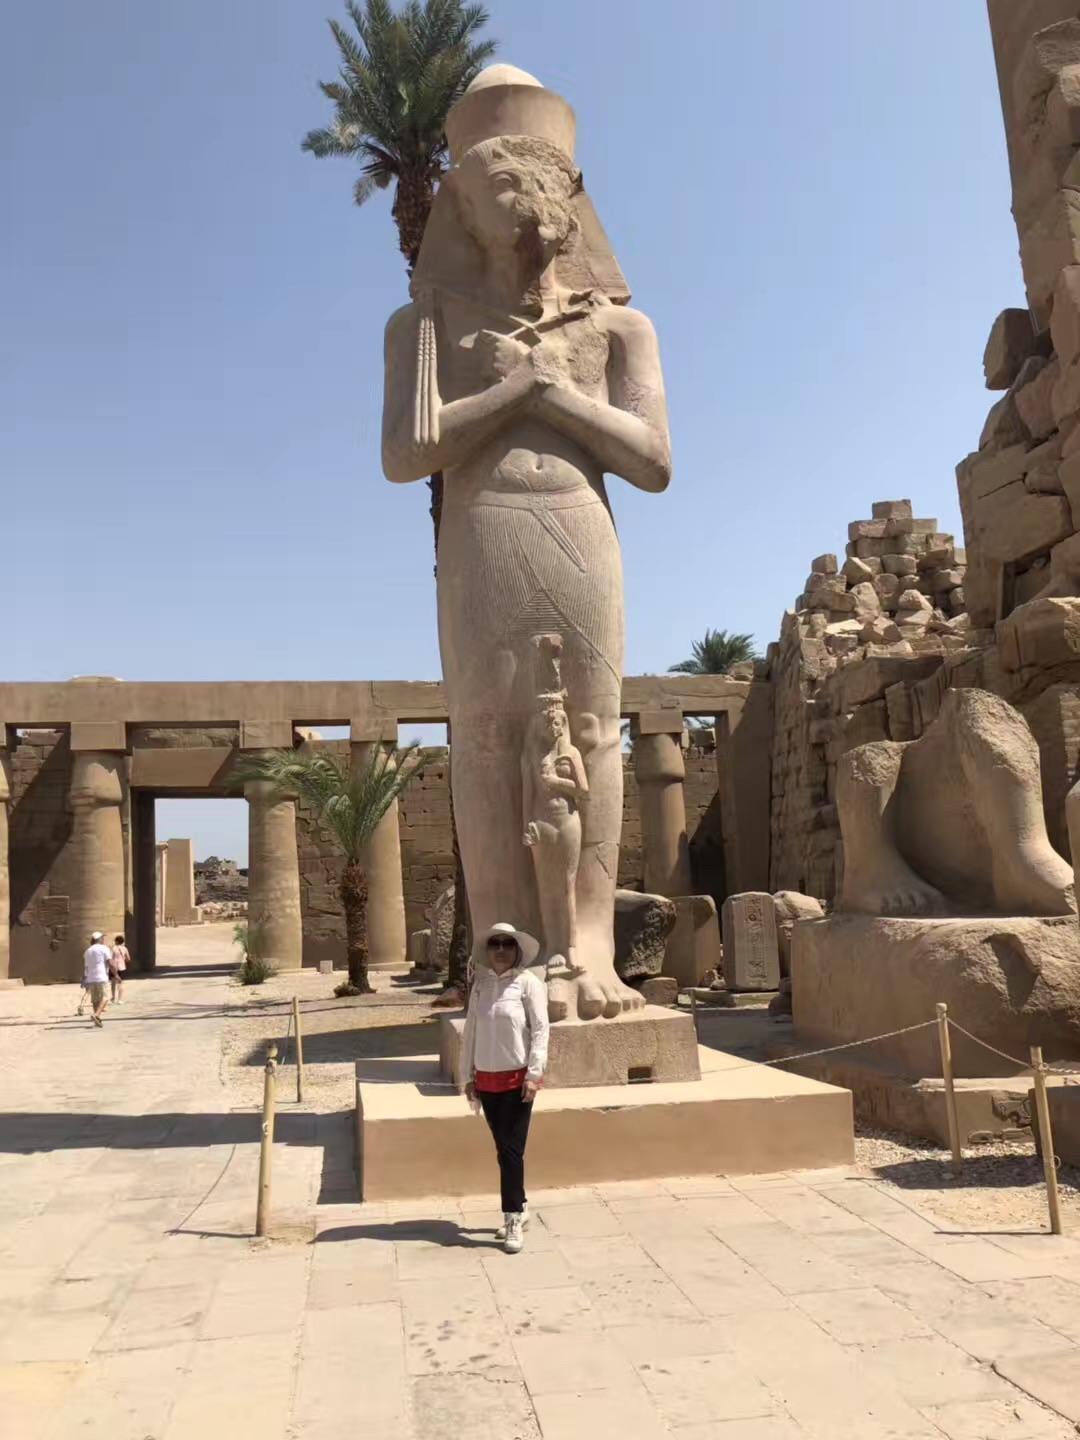 【携程攻略】卢克索卡尔纳克神庙景点,卡纳克神庙是埃及规模最大的神庙群，埃及“三个必去”之一，门票80LE…